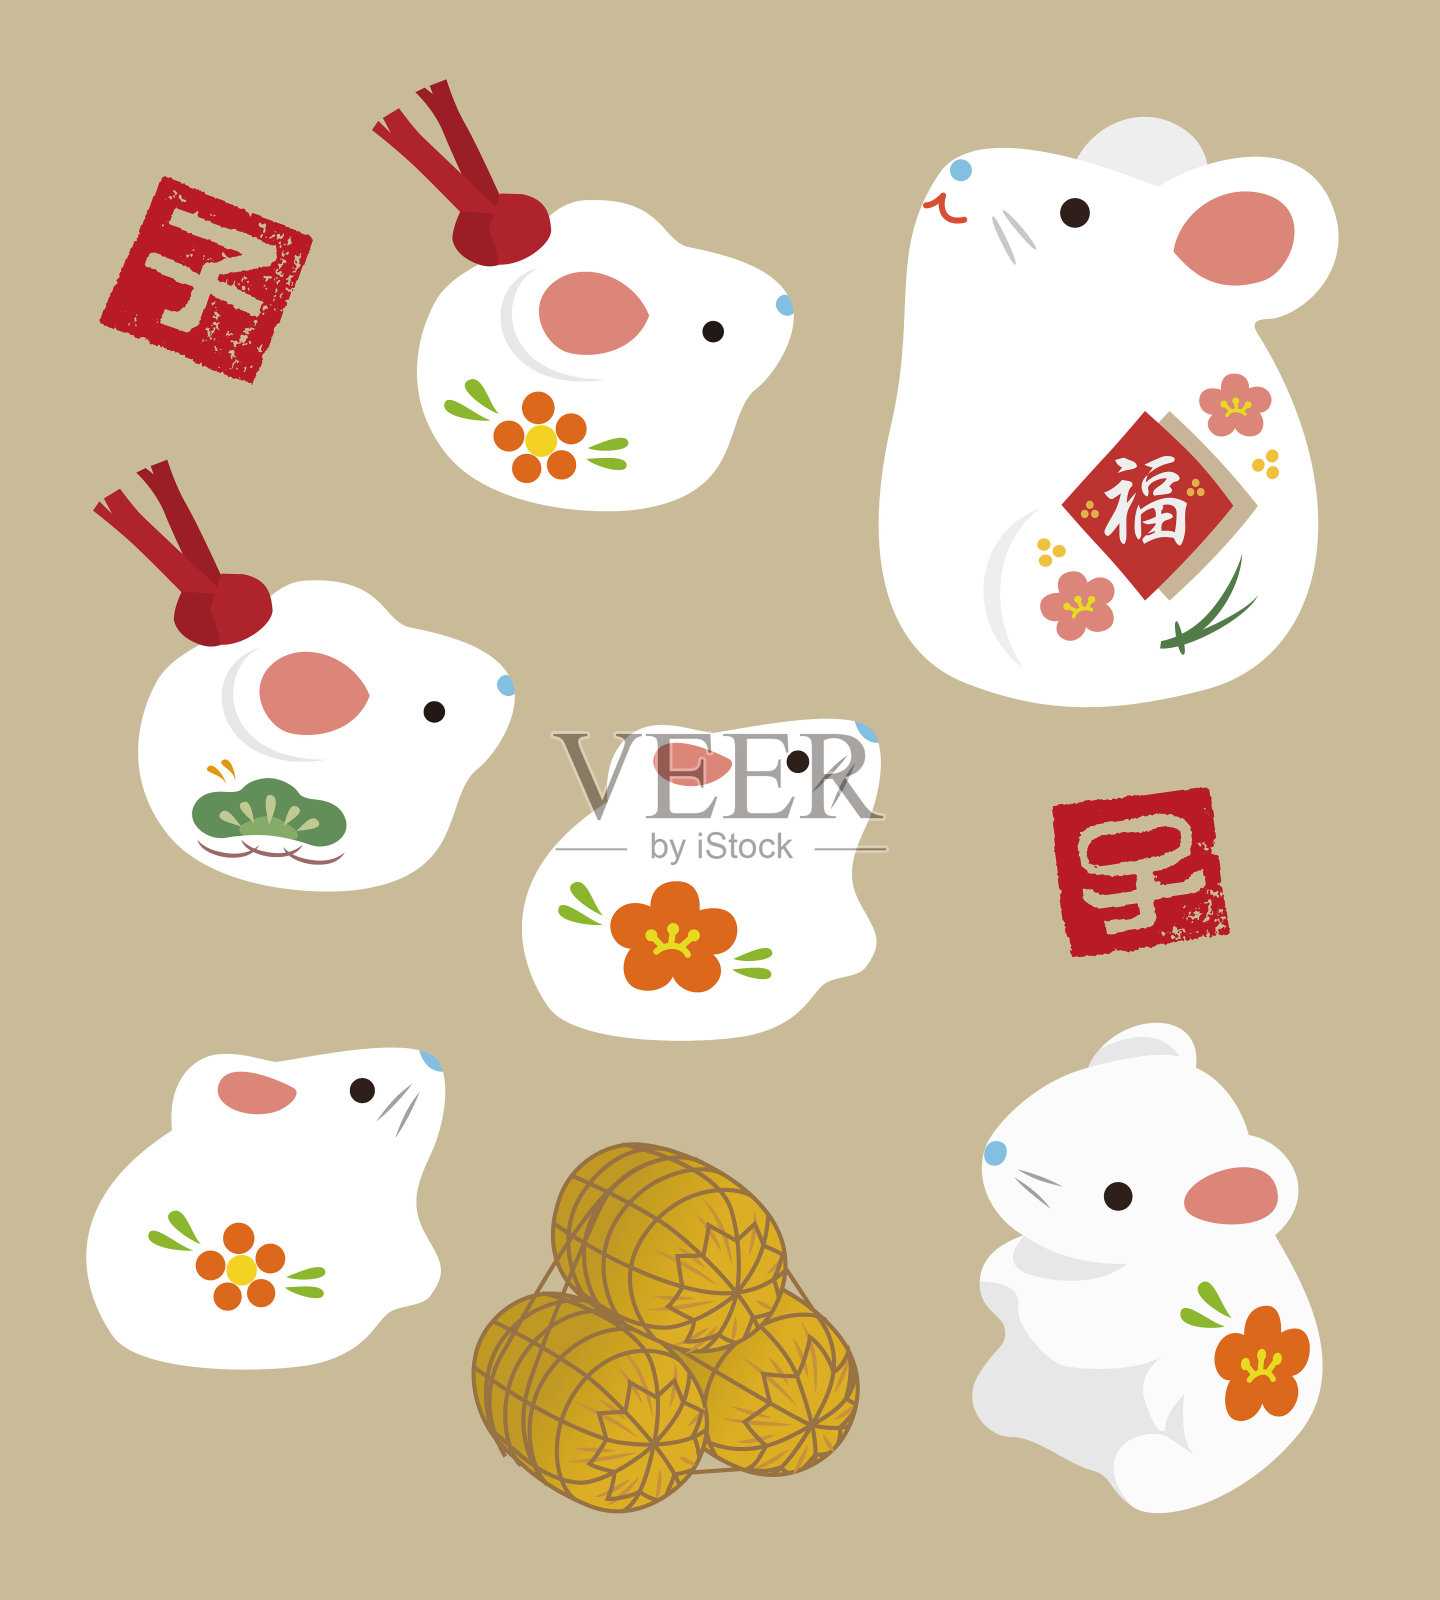 新年元素-老鼠娃娃和生肖邮票和米袋设计元素图片